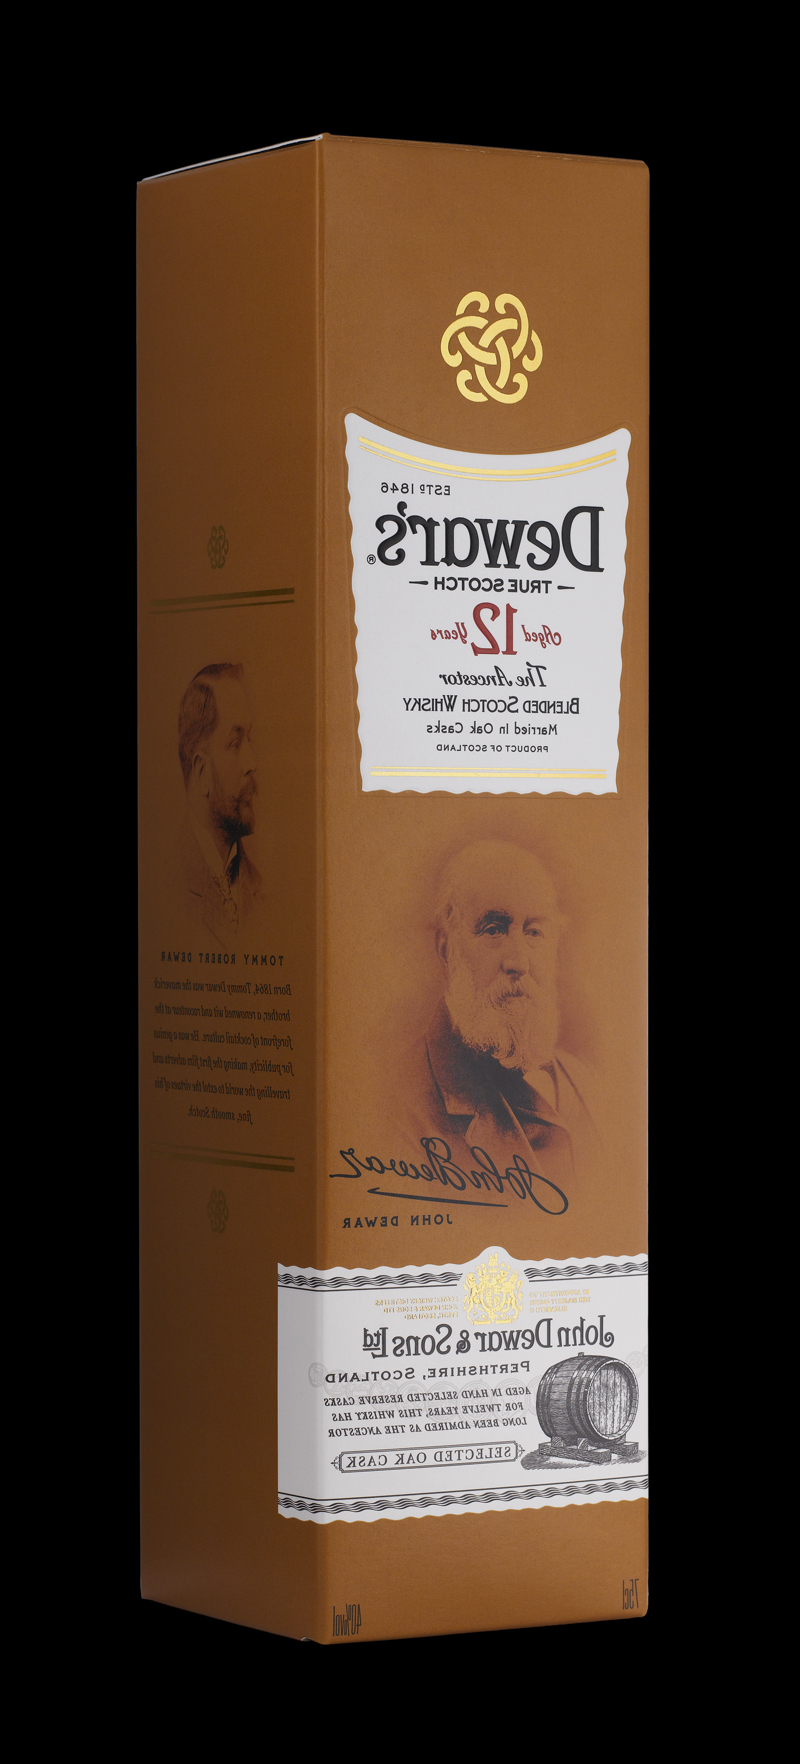 世界上获奖最多的混合苏格兰威士忌包装设计(图2)